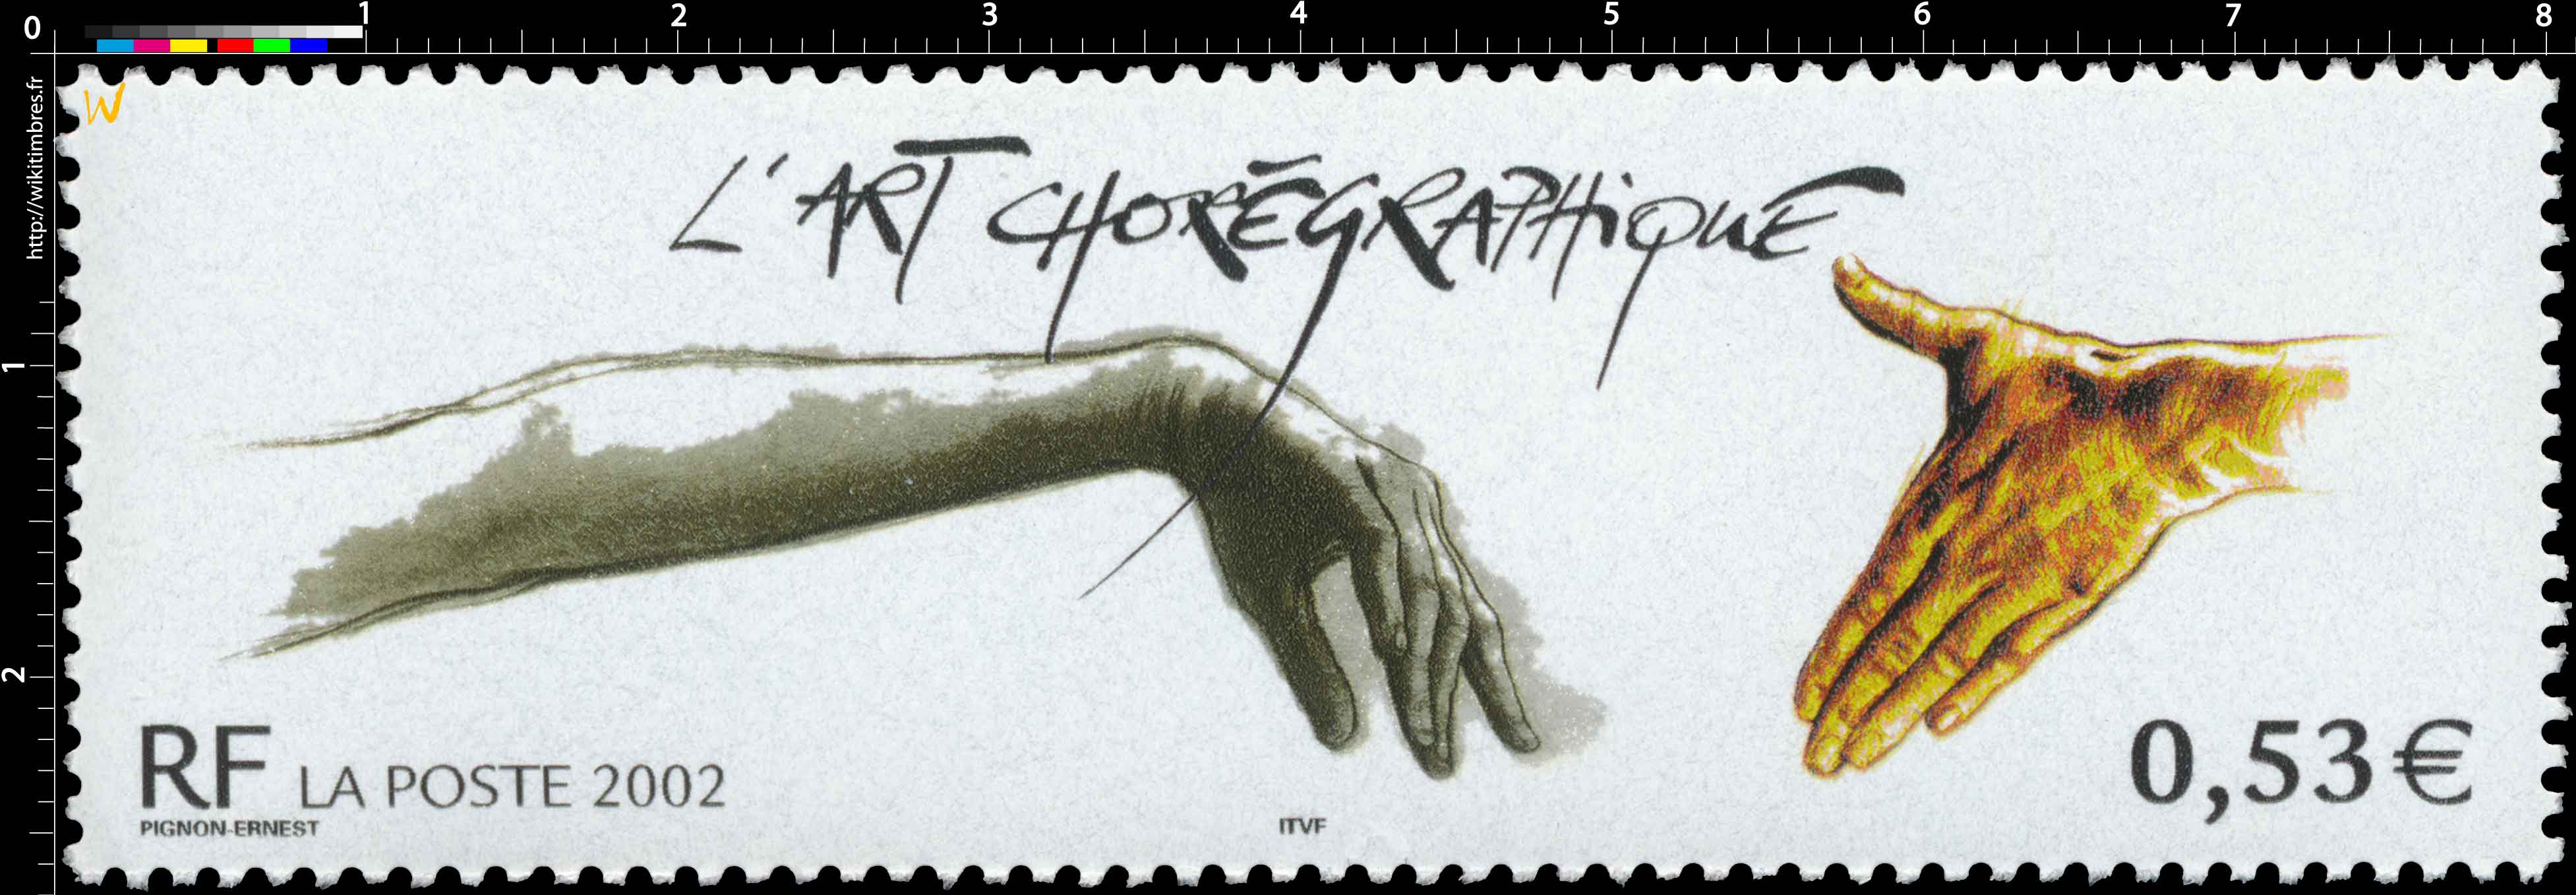 2002 L'ART CHORÉGRAPHIQUE